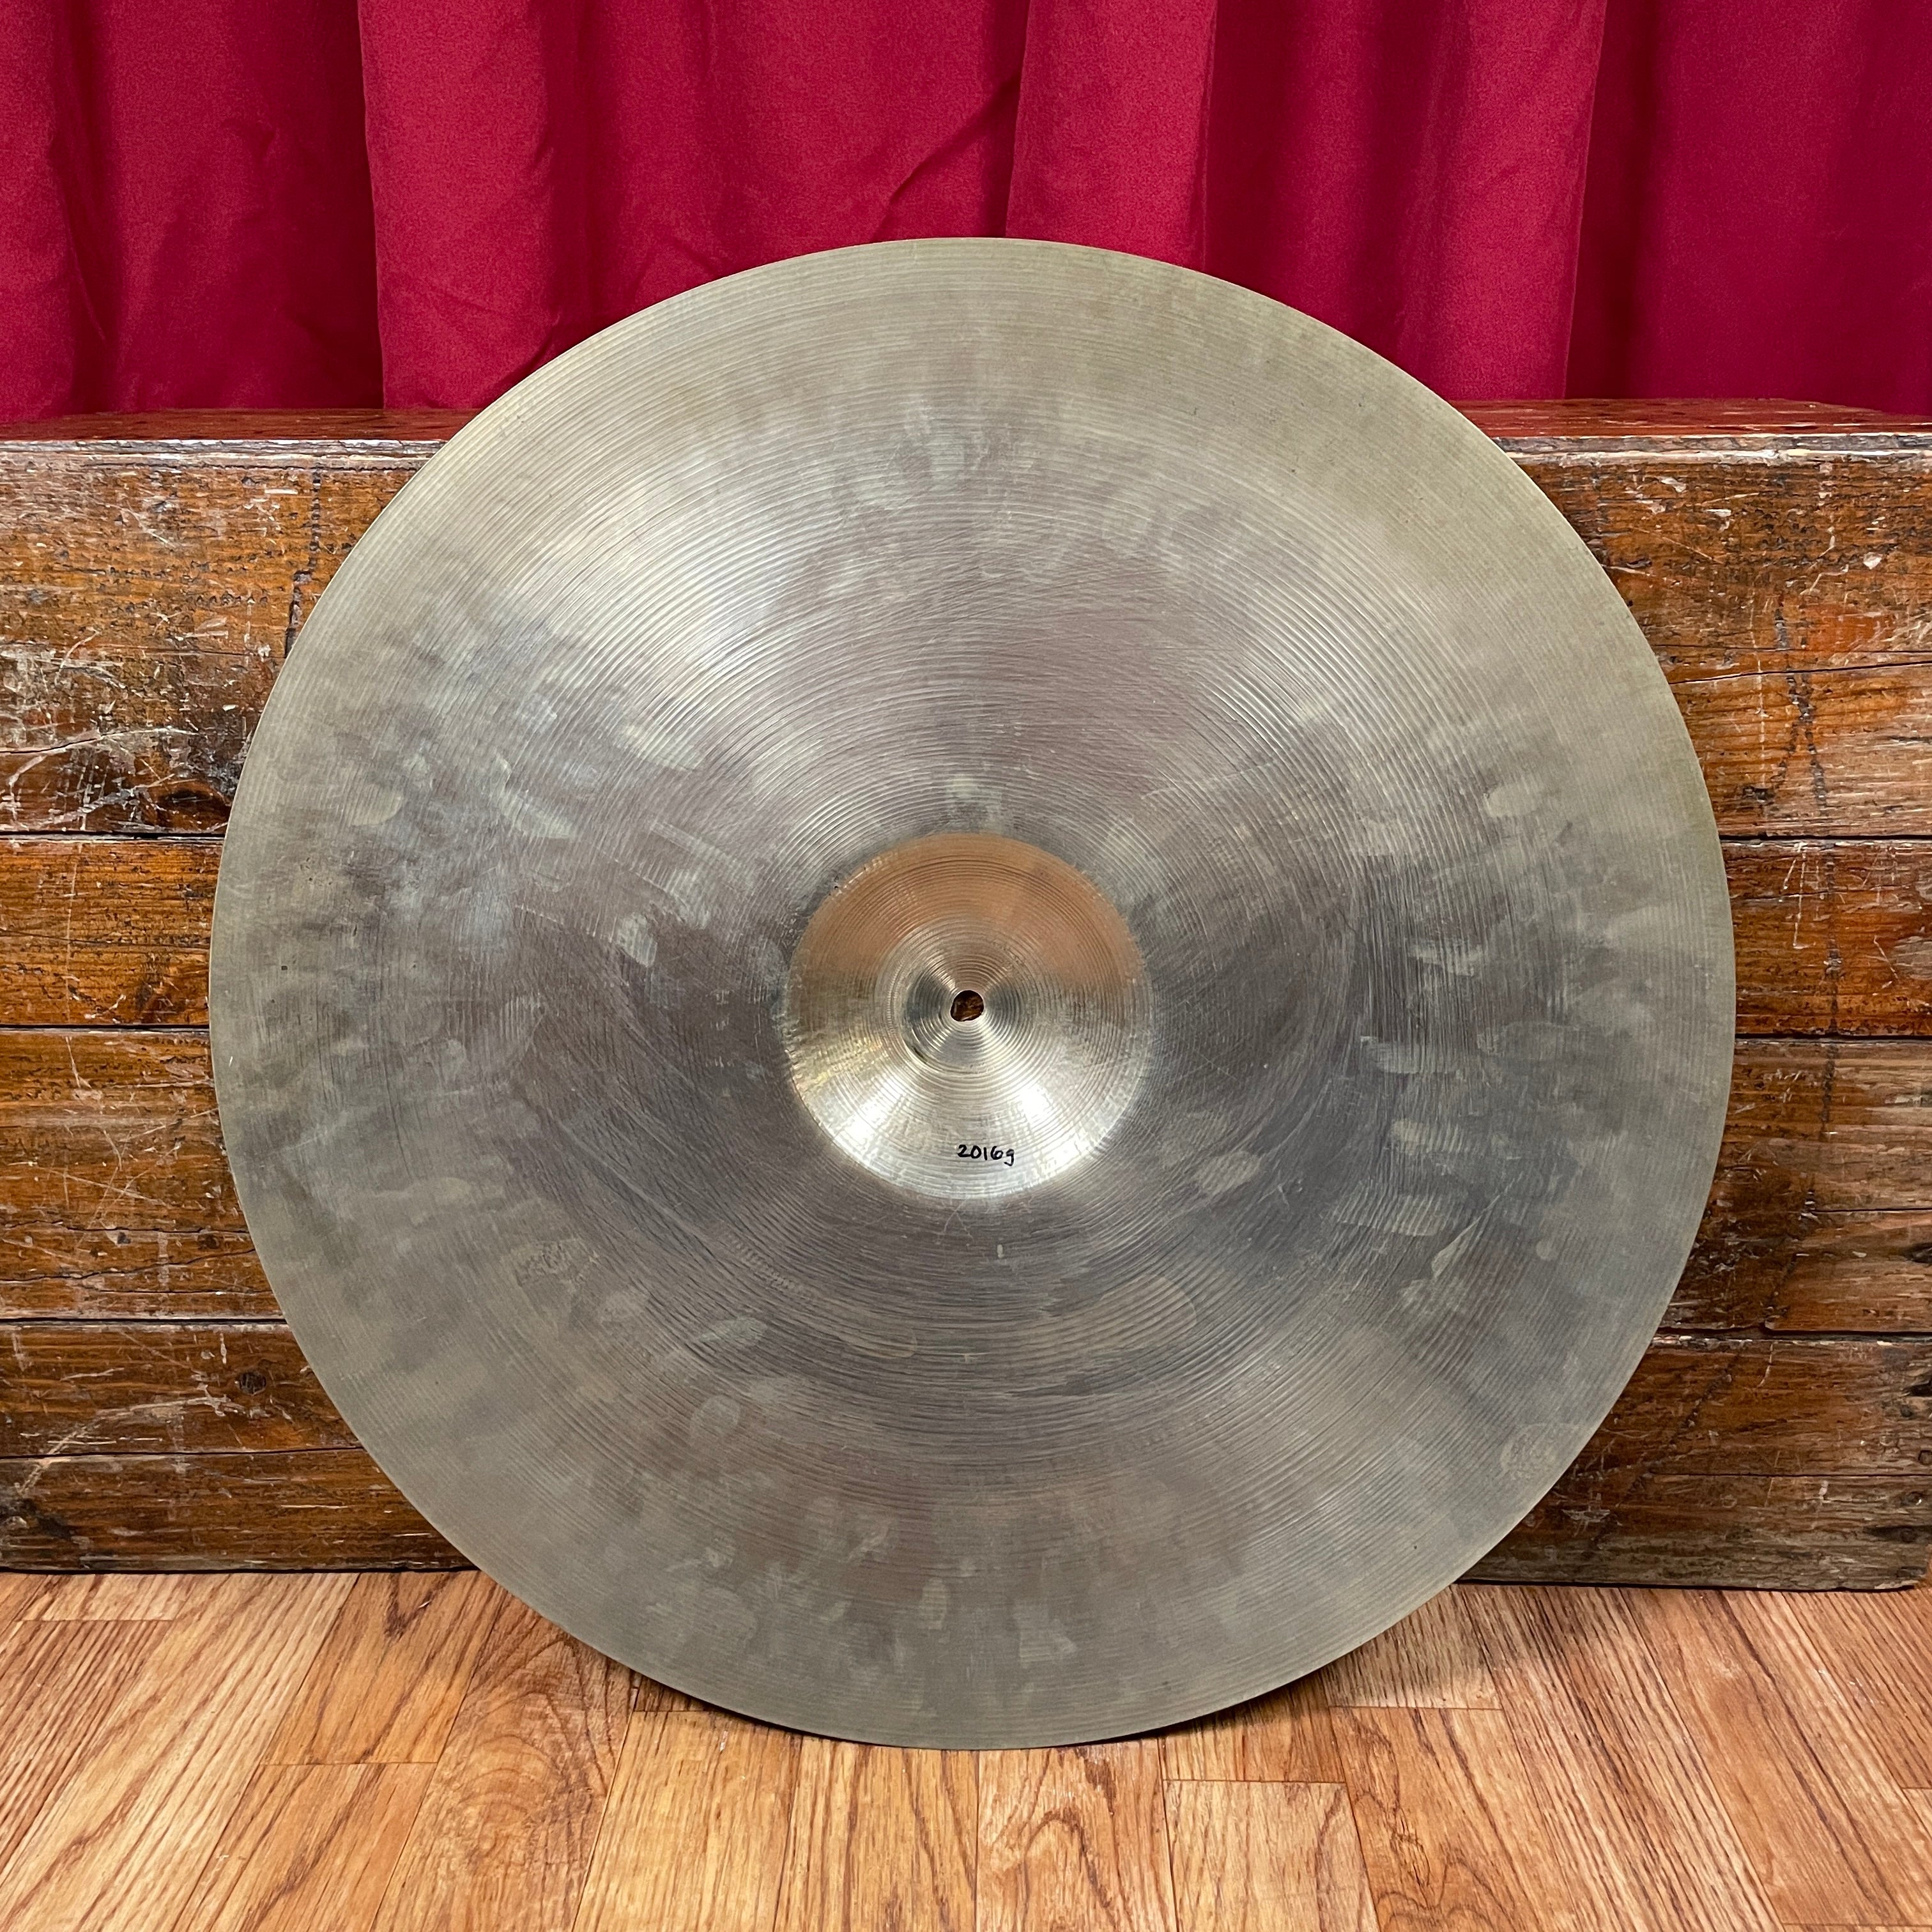 純正直売Zanci Vaibra 20 cymbal Vintage. Made in Italy シンバル